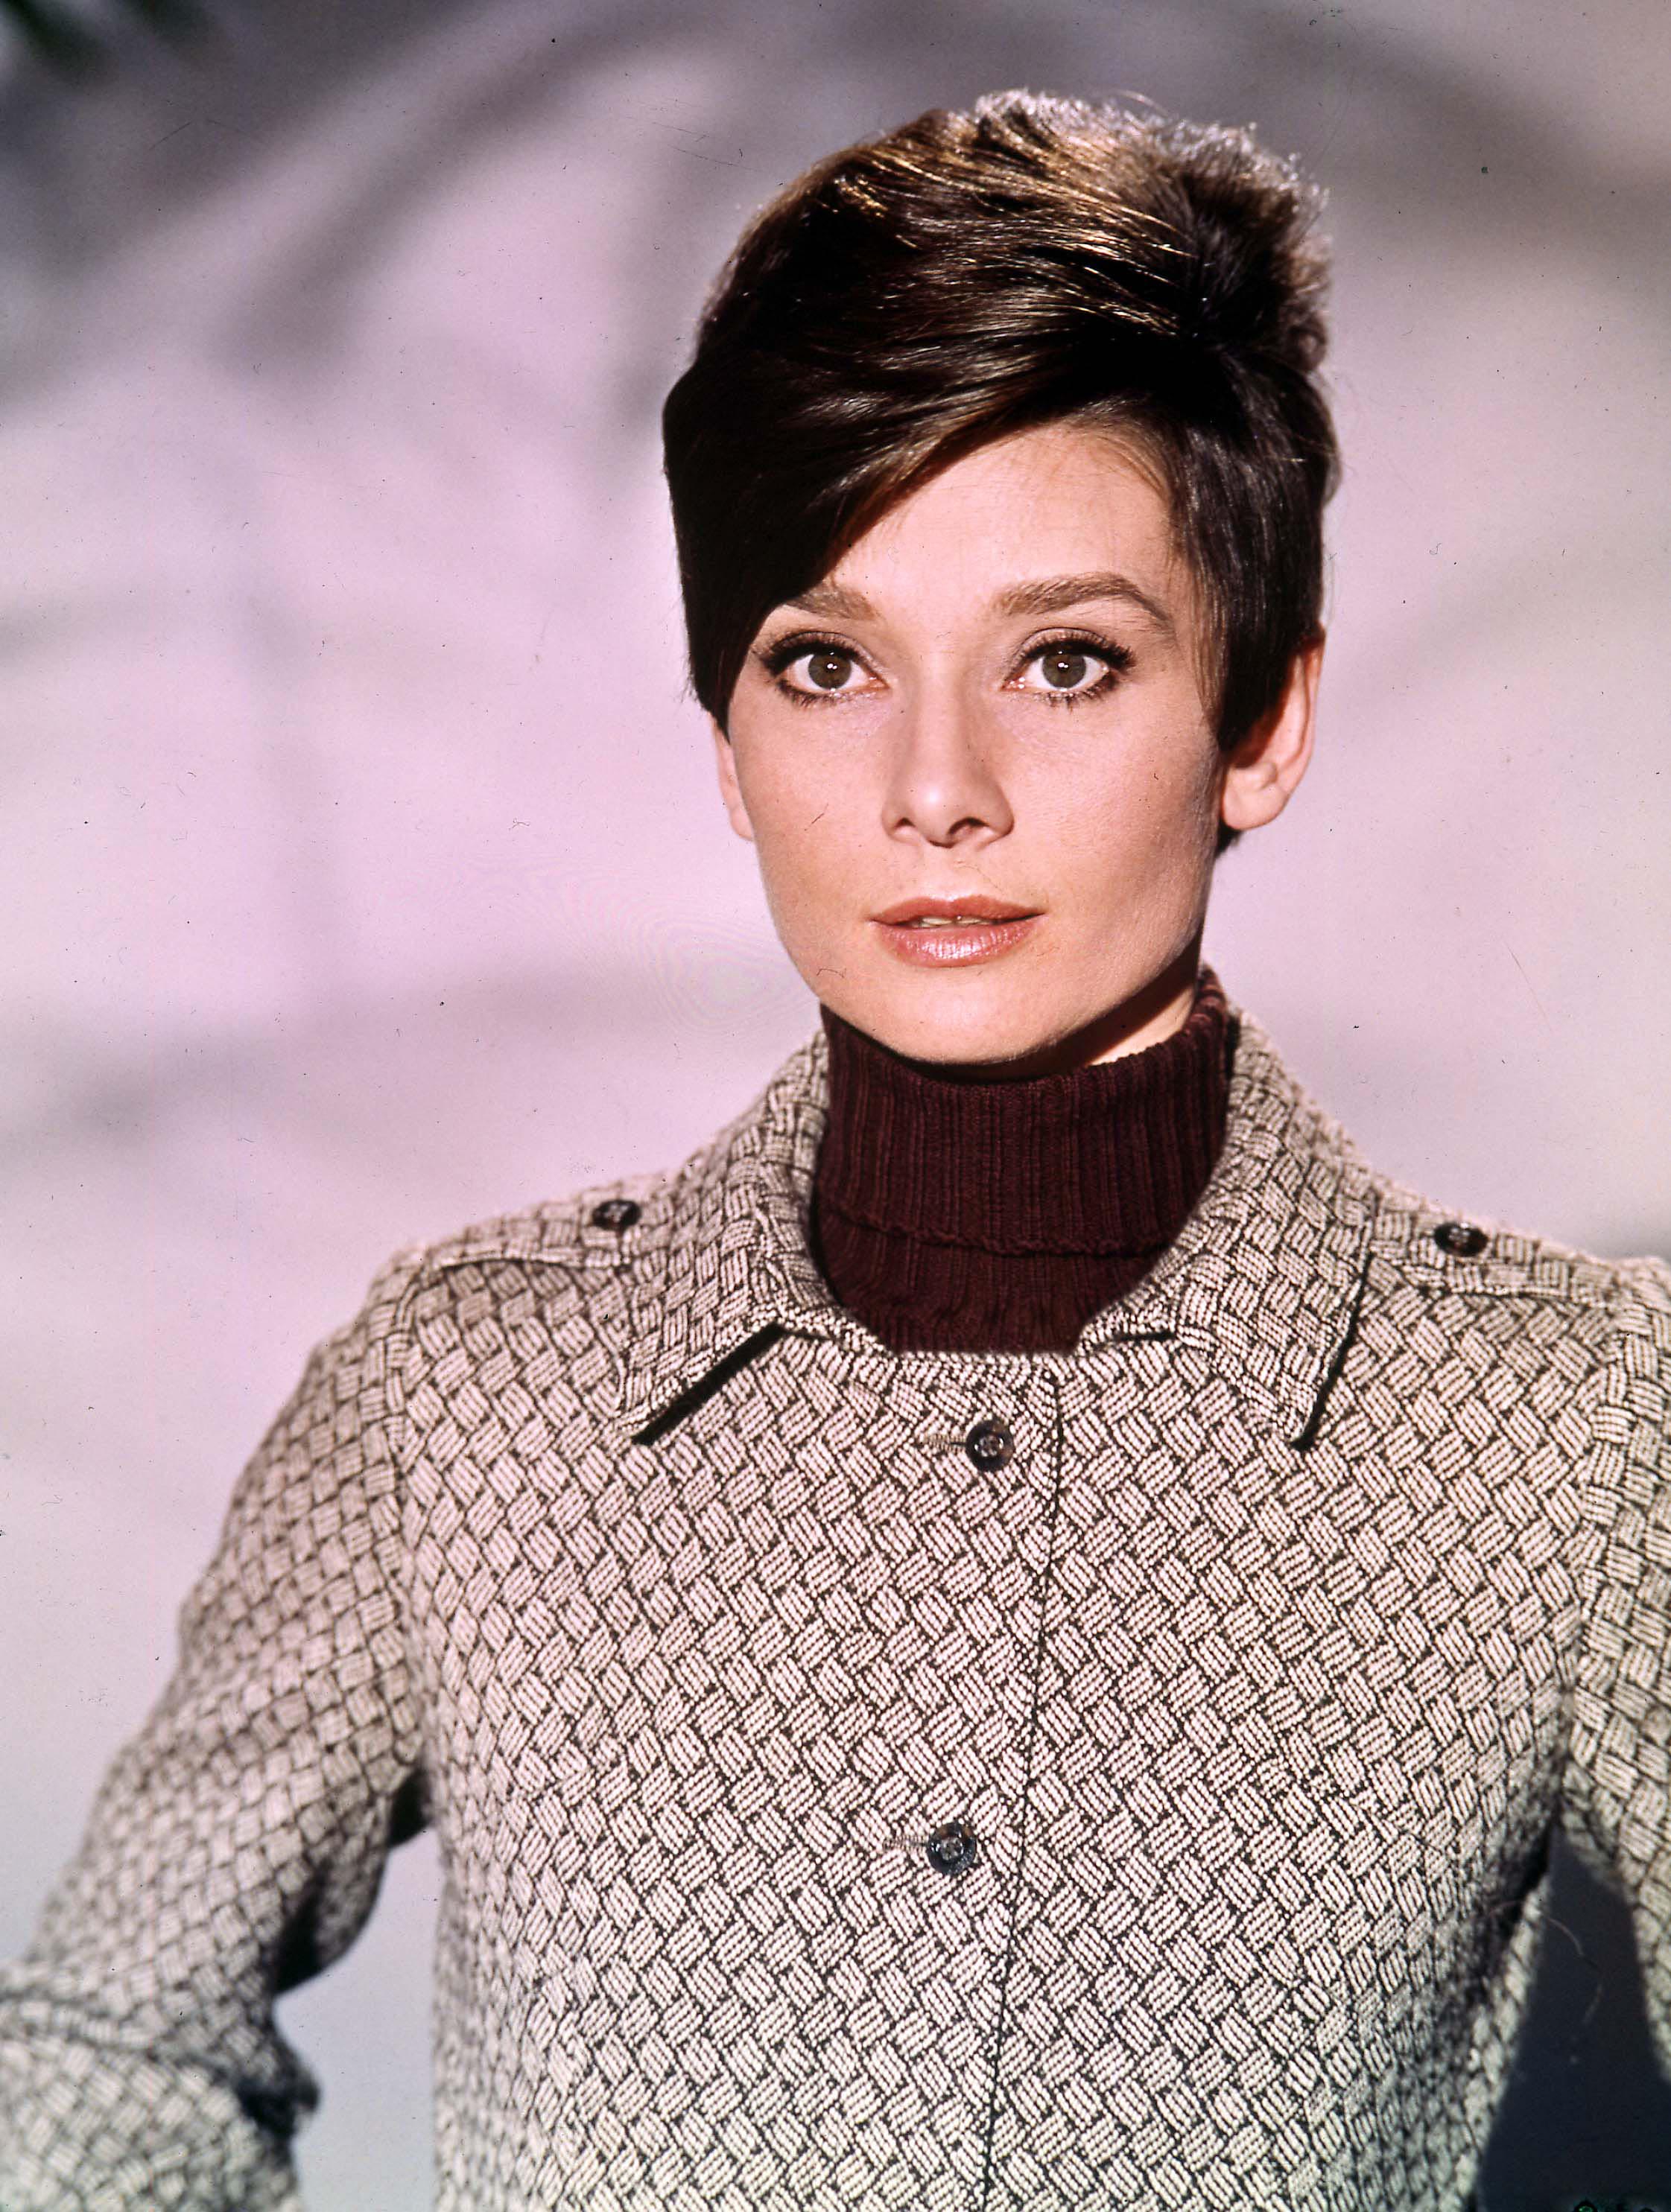 American Actress Audrey Hepburn, in 1968 | Source: Getty Images